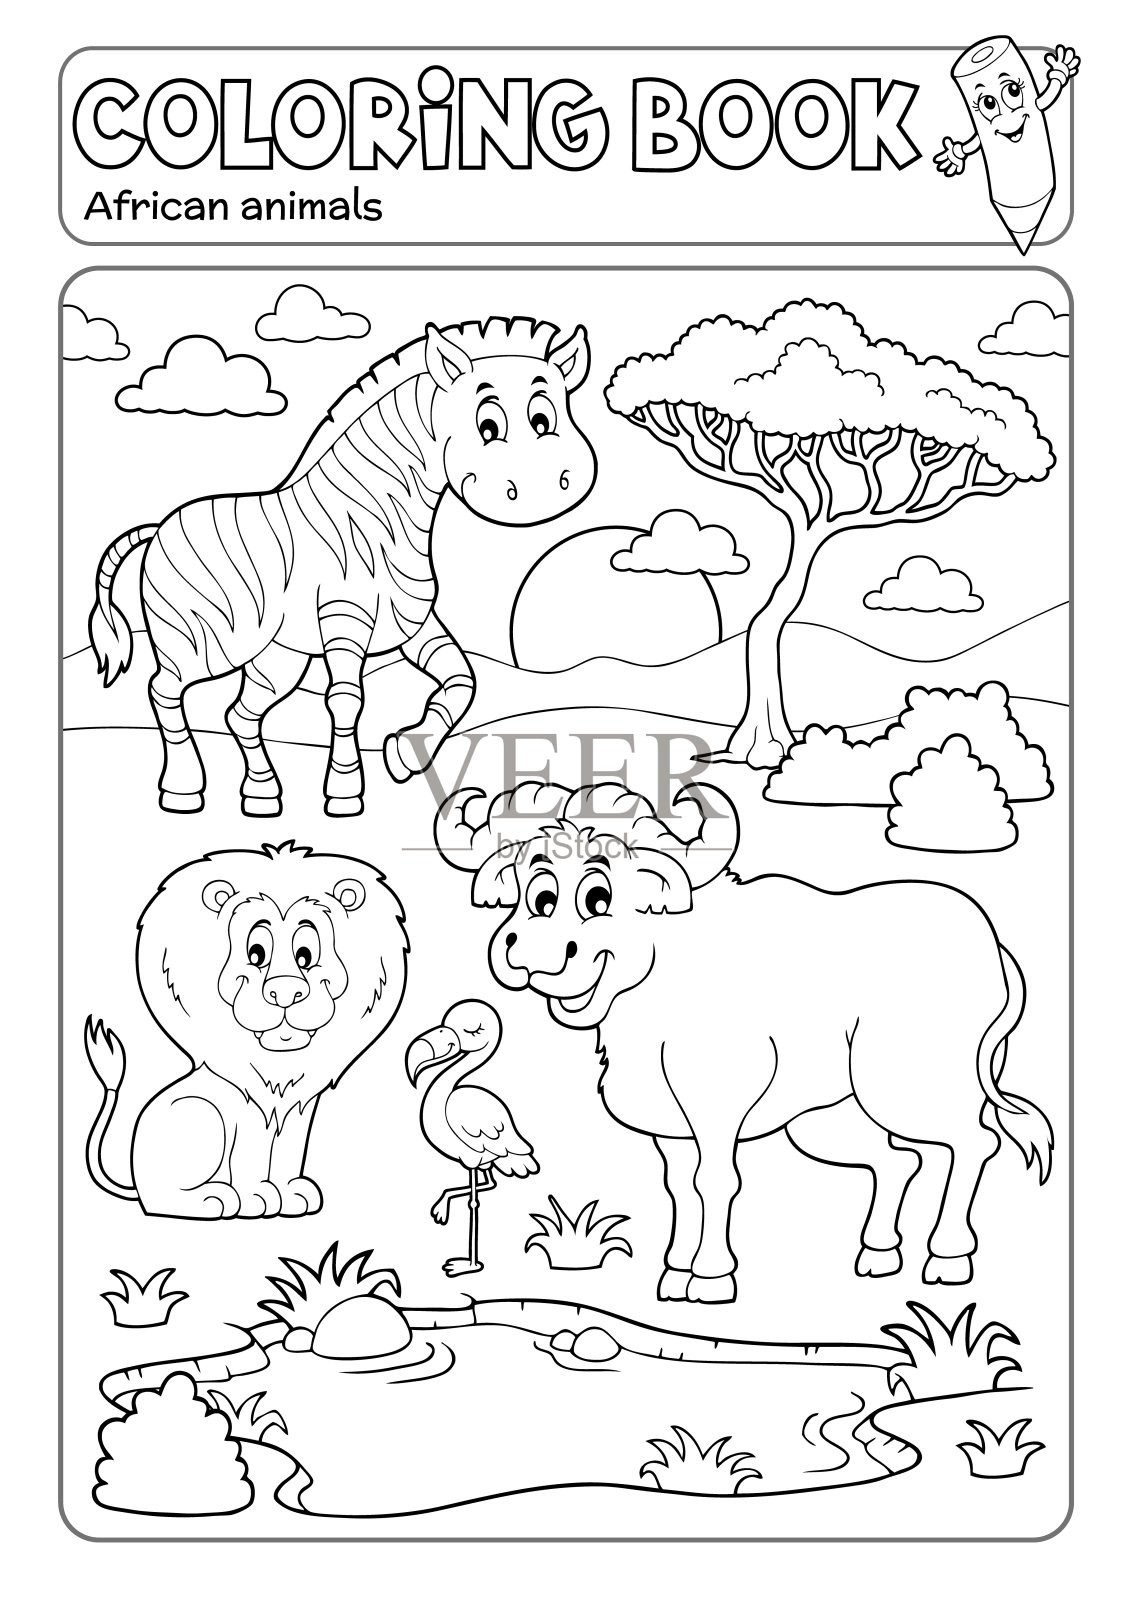 涂色书非洲动物5插画图片素材